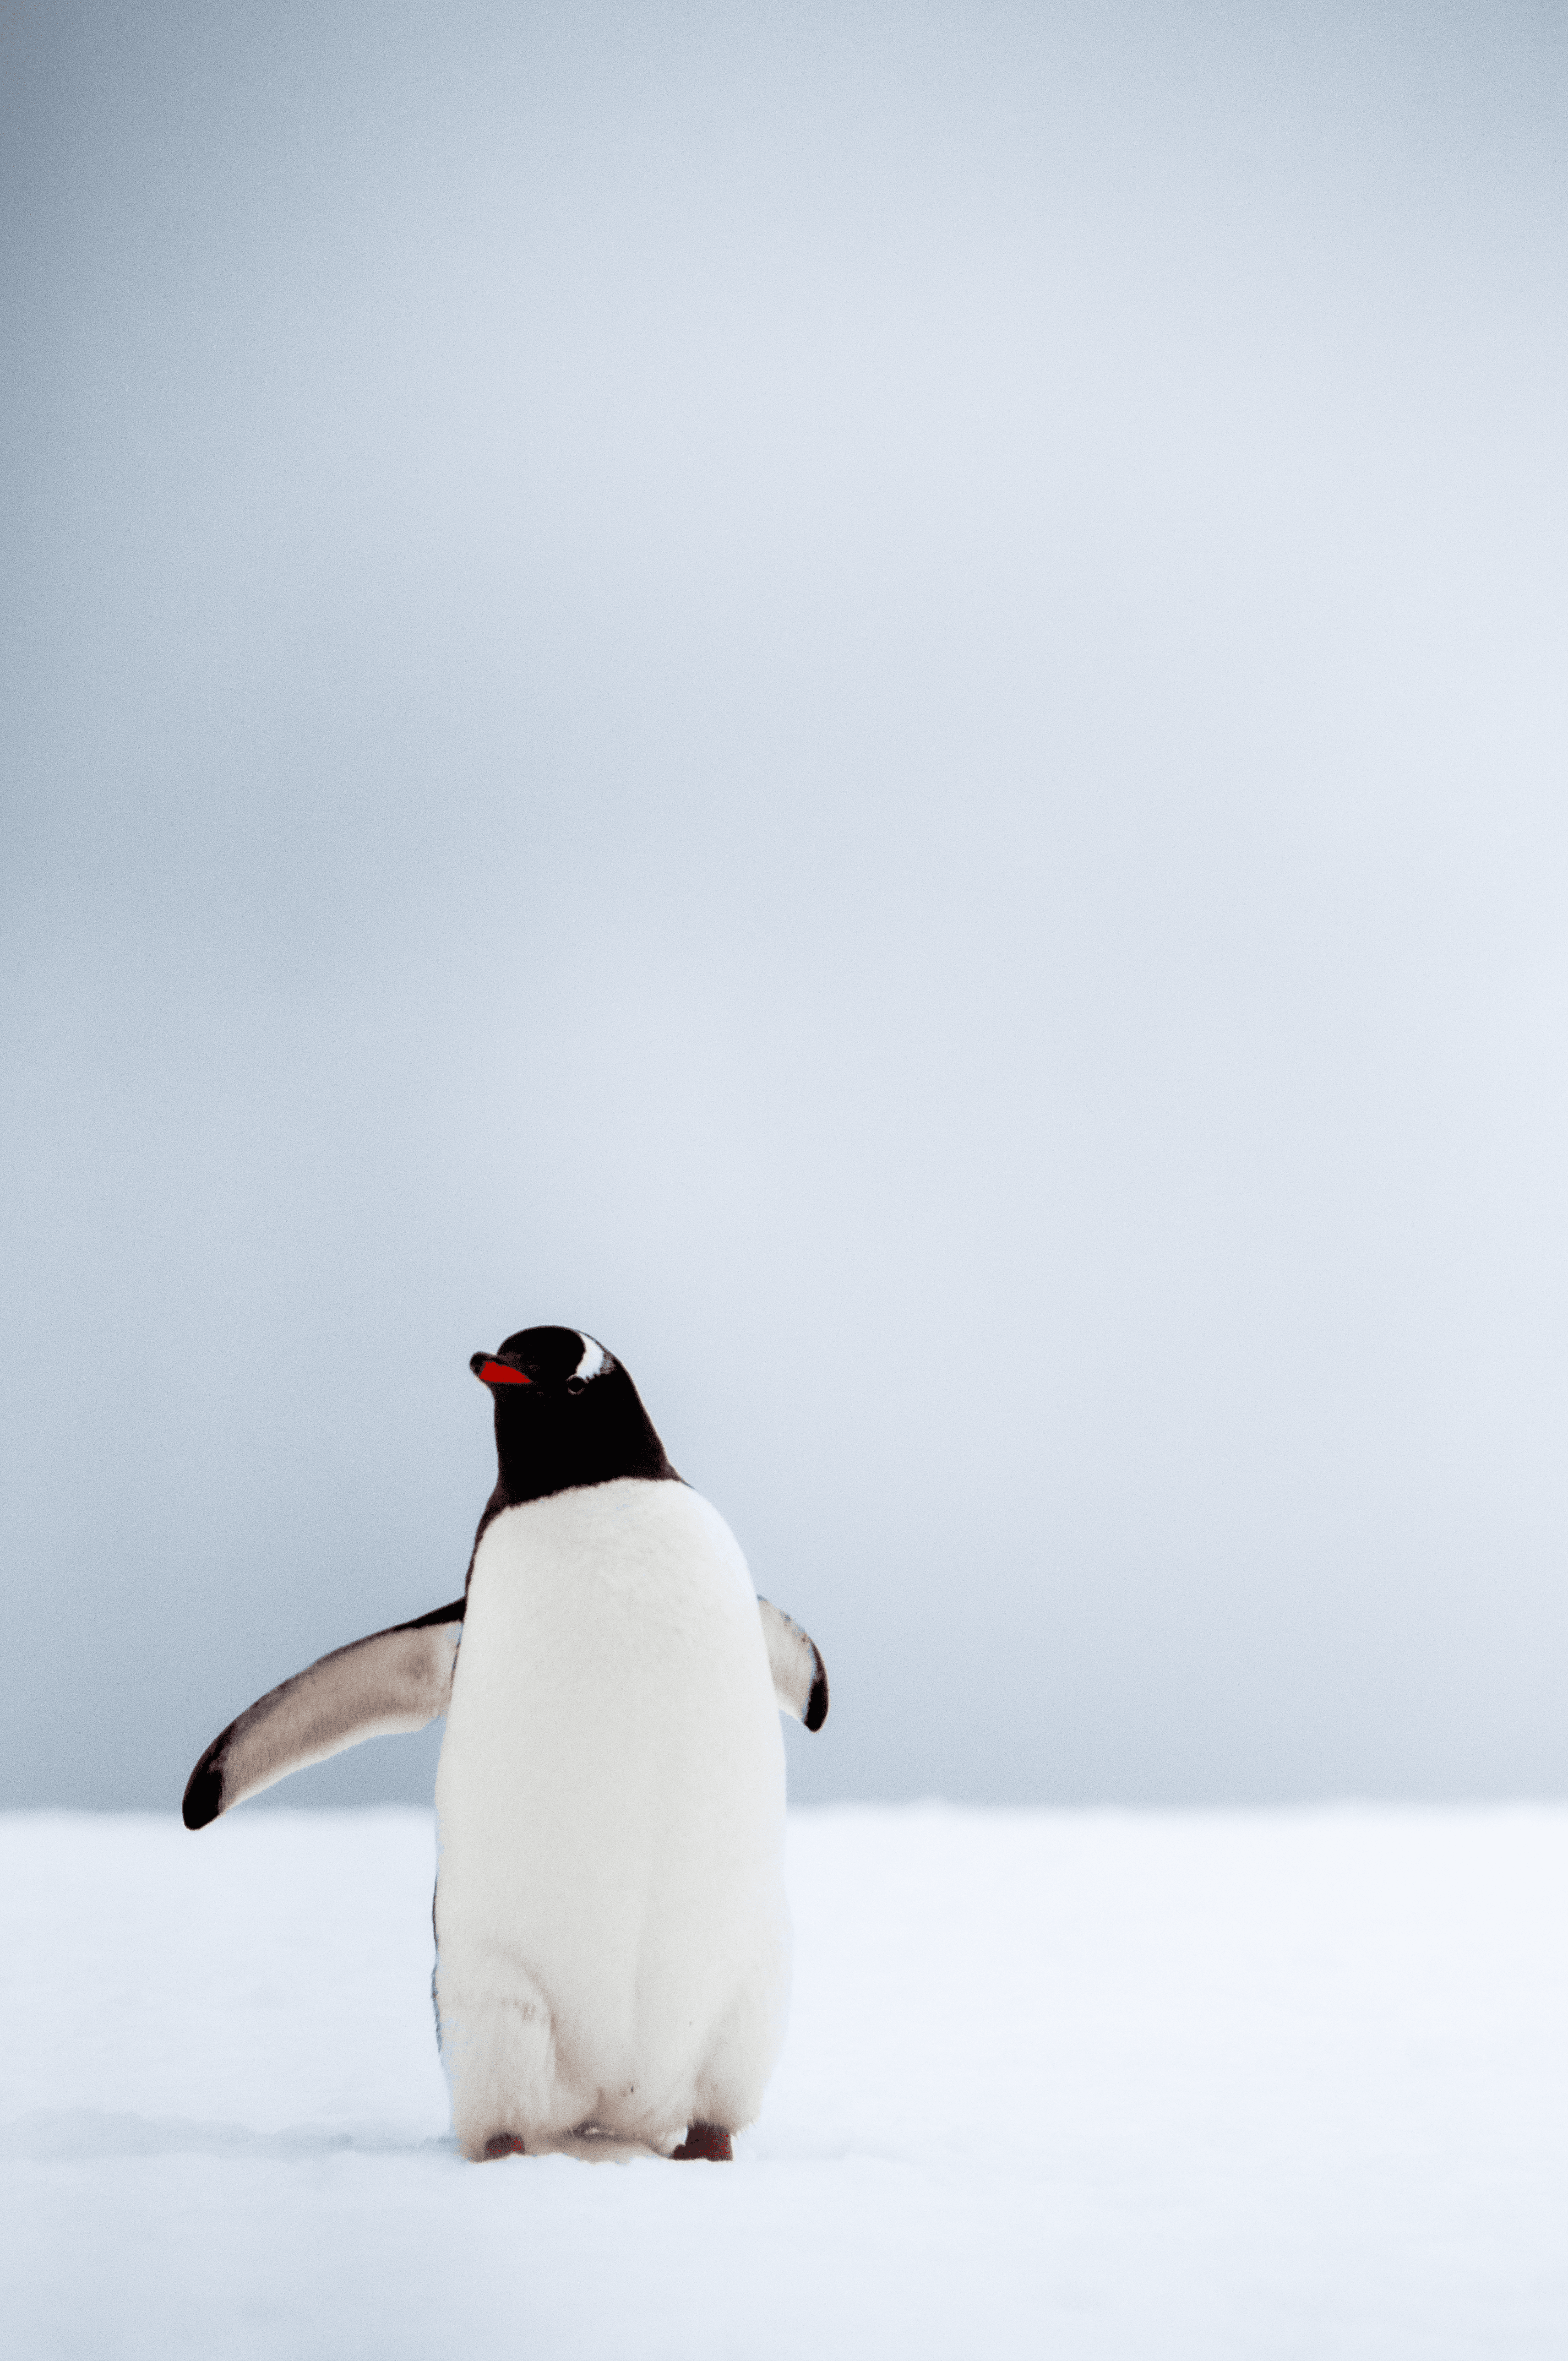 Wednesday - Gentoo Penguin - Antarctica